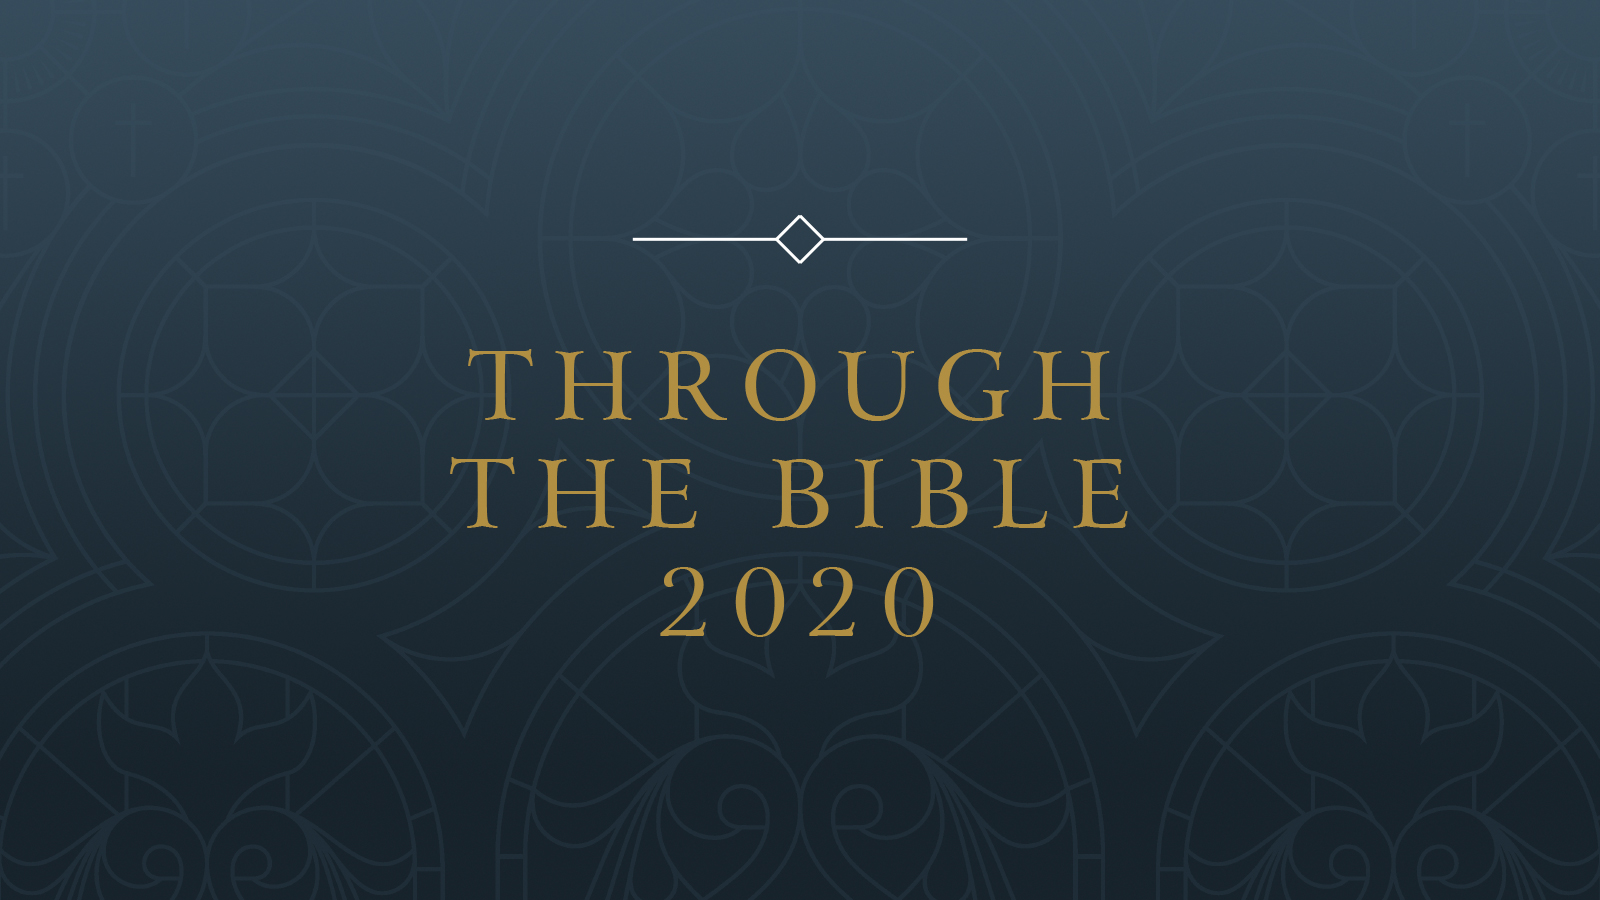 Through the Bible 2020 banner